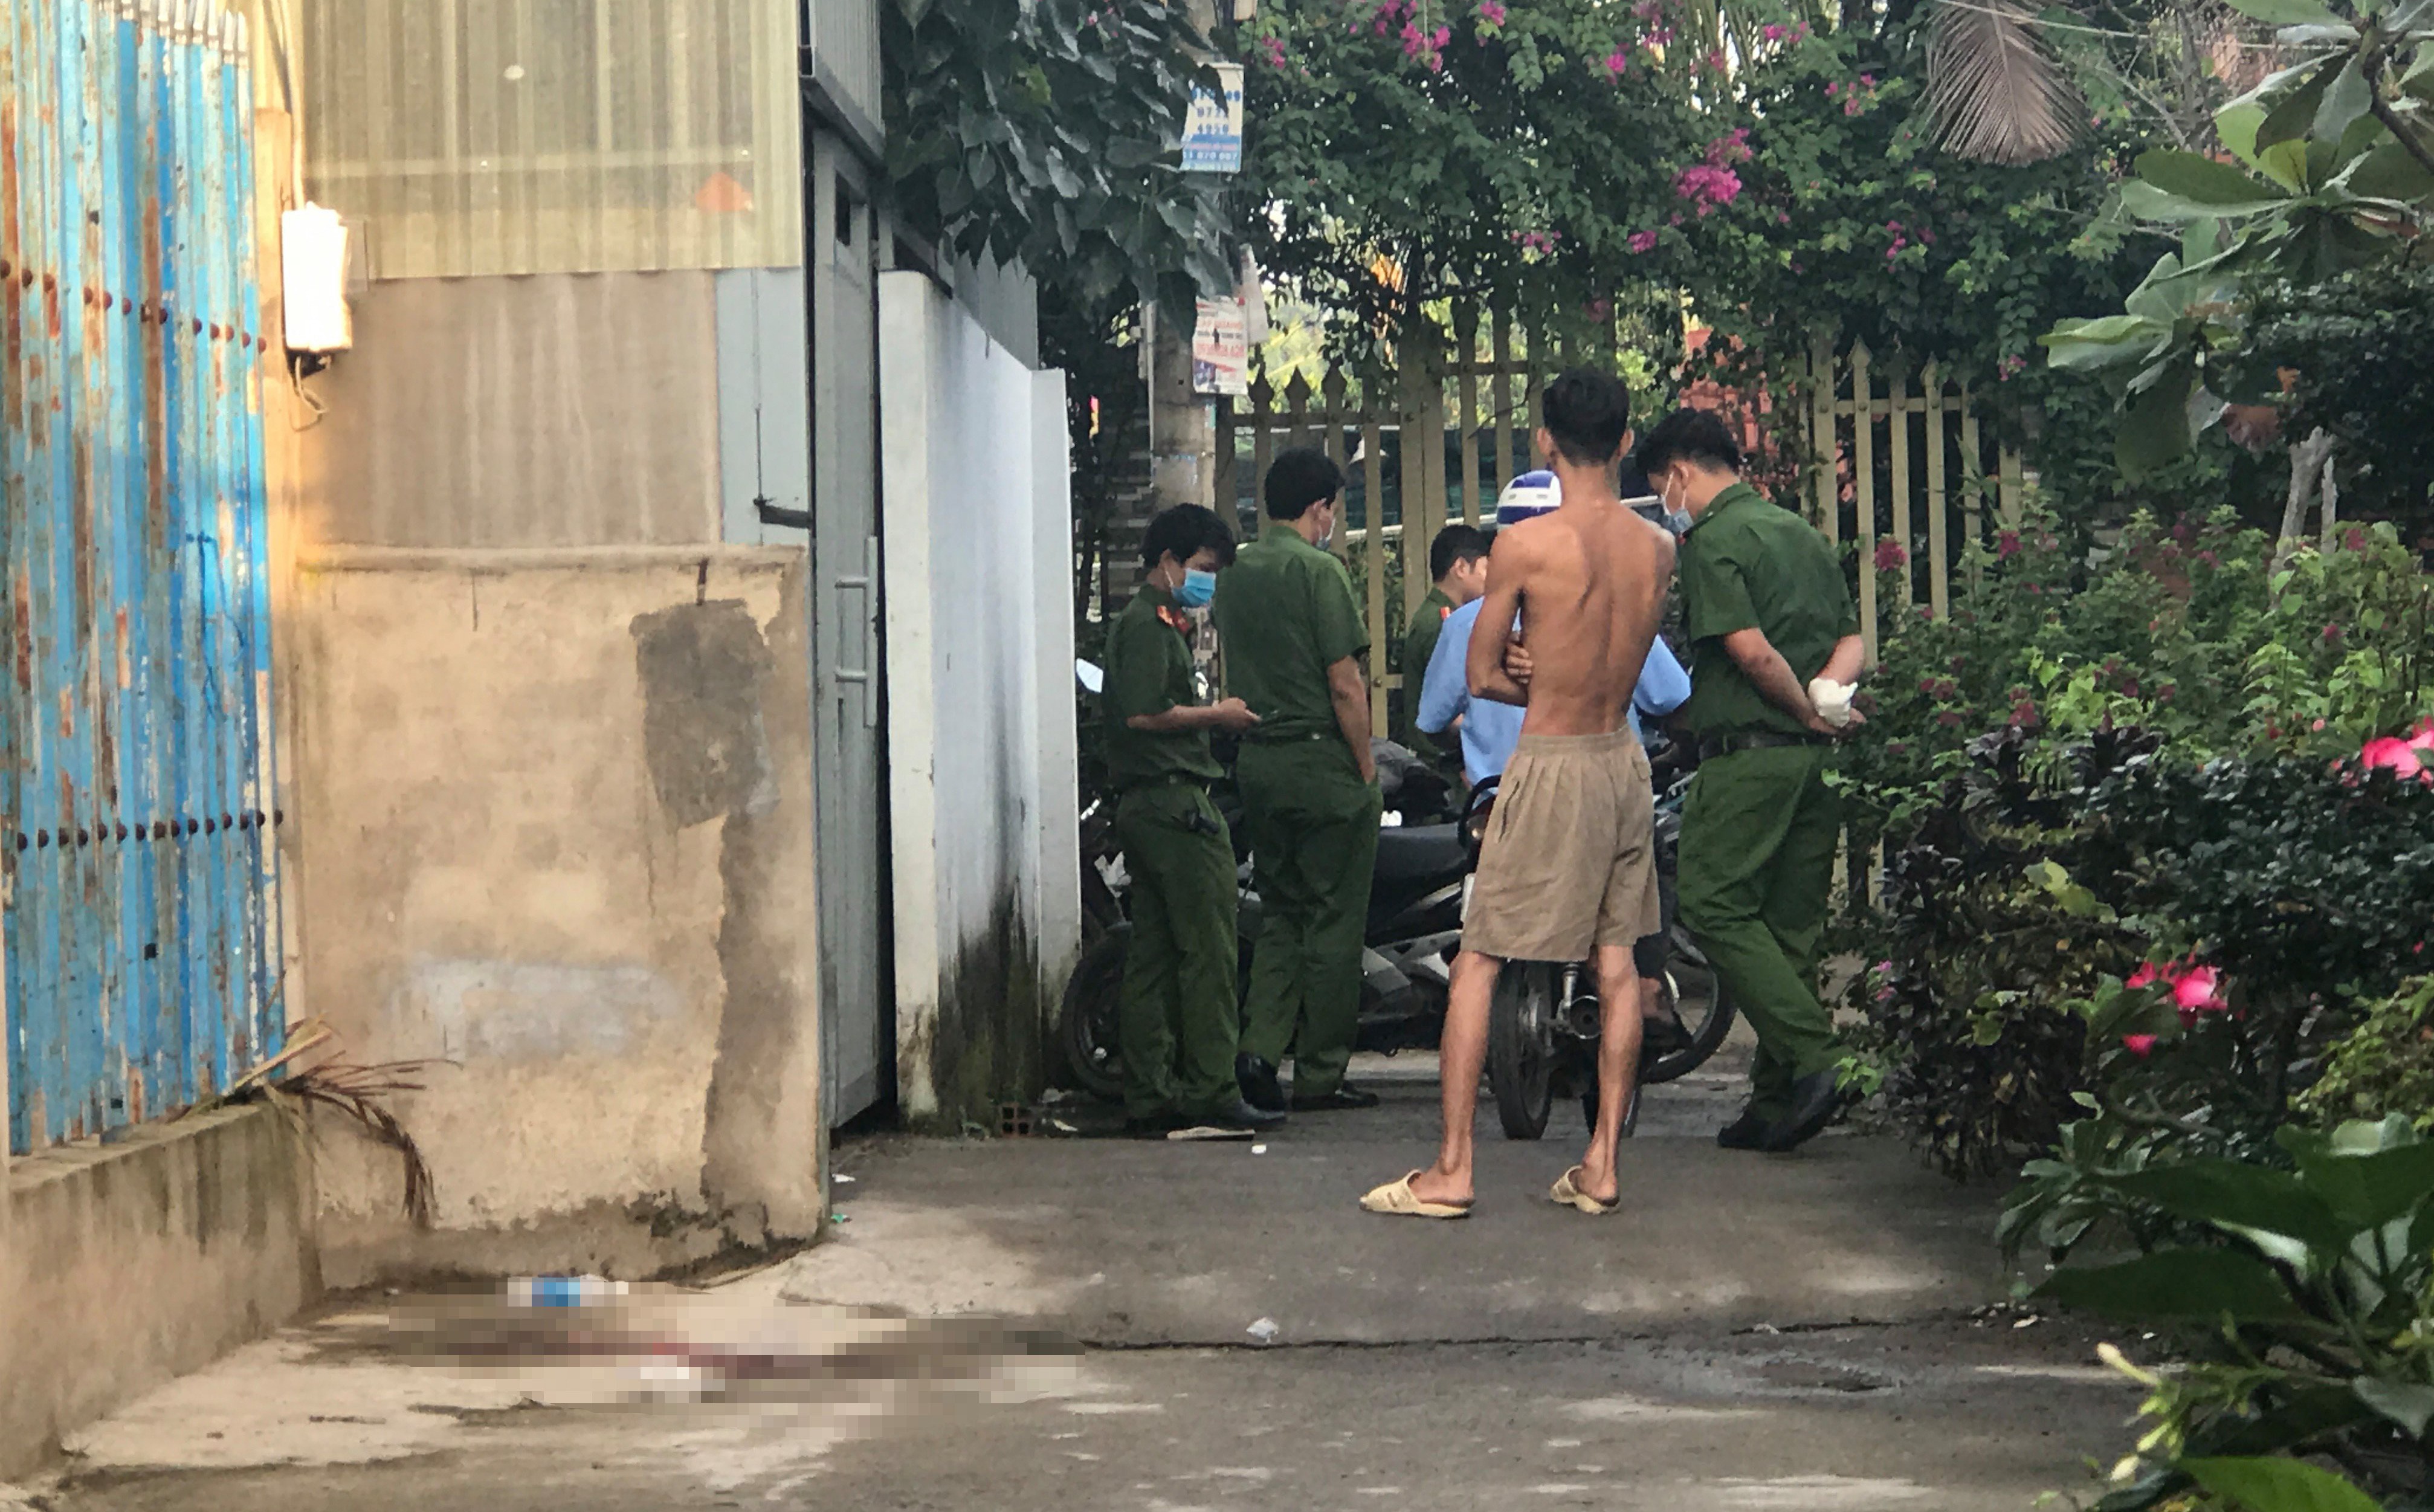 Người đàn ông nghi bị bắn chết khi đến nhà bạn chơi ở Sài Gòn